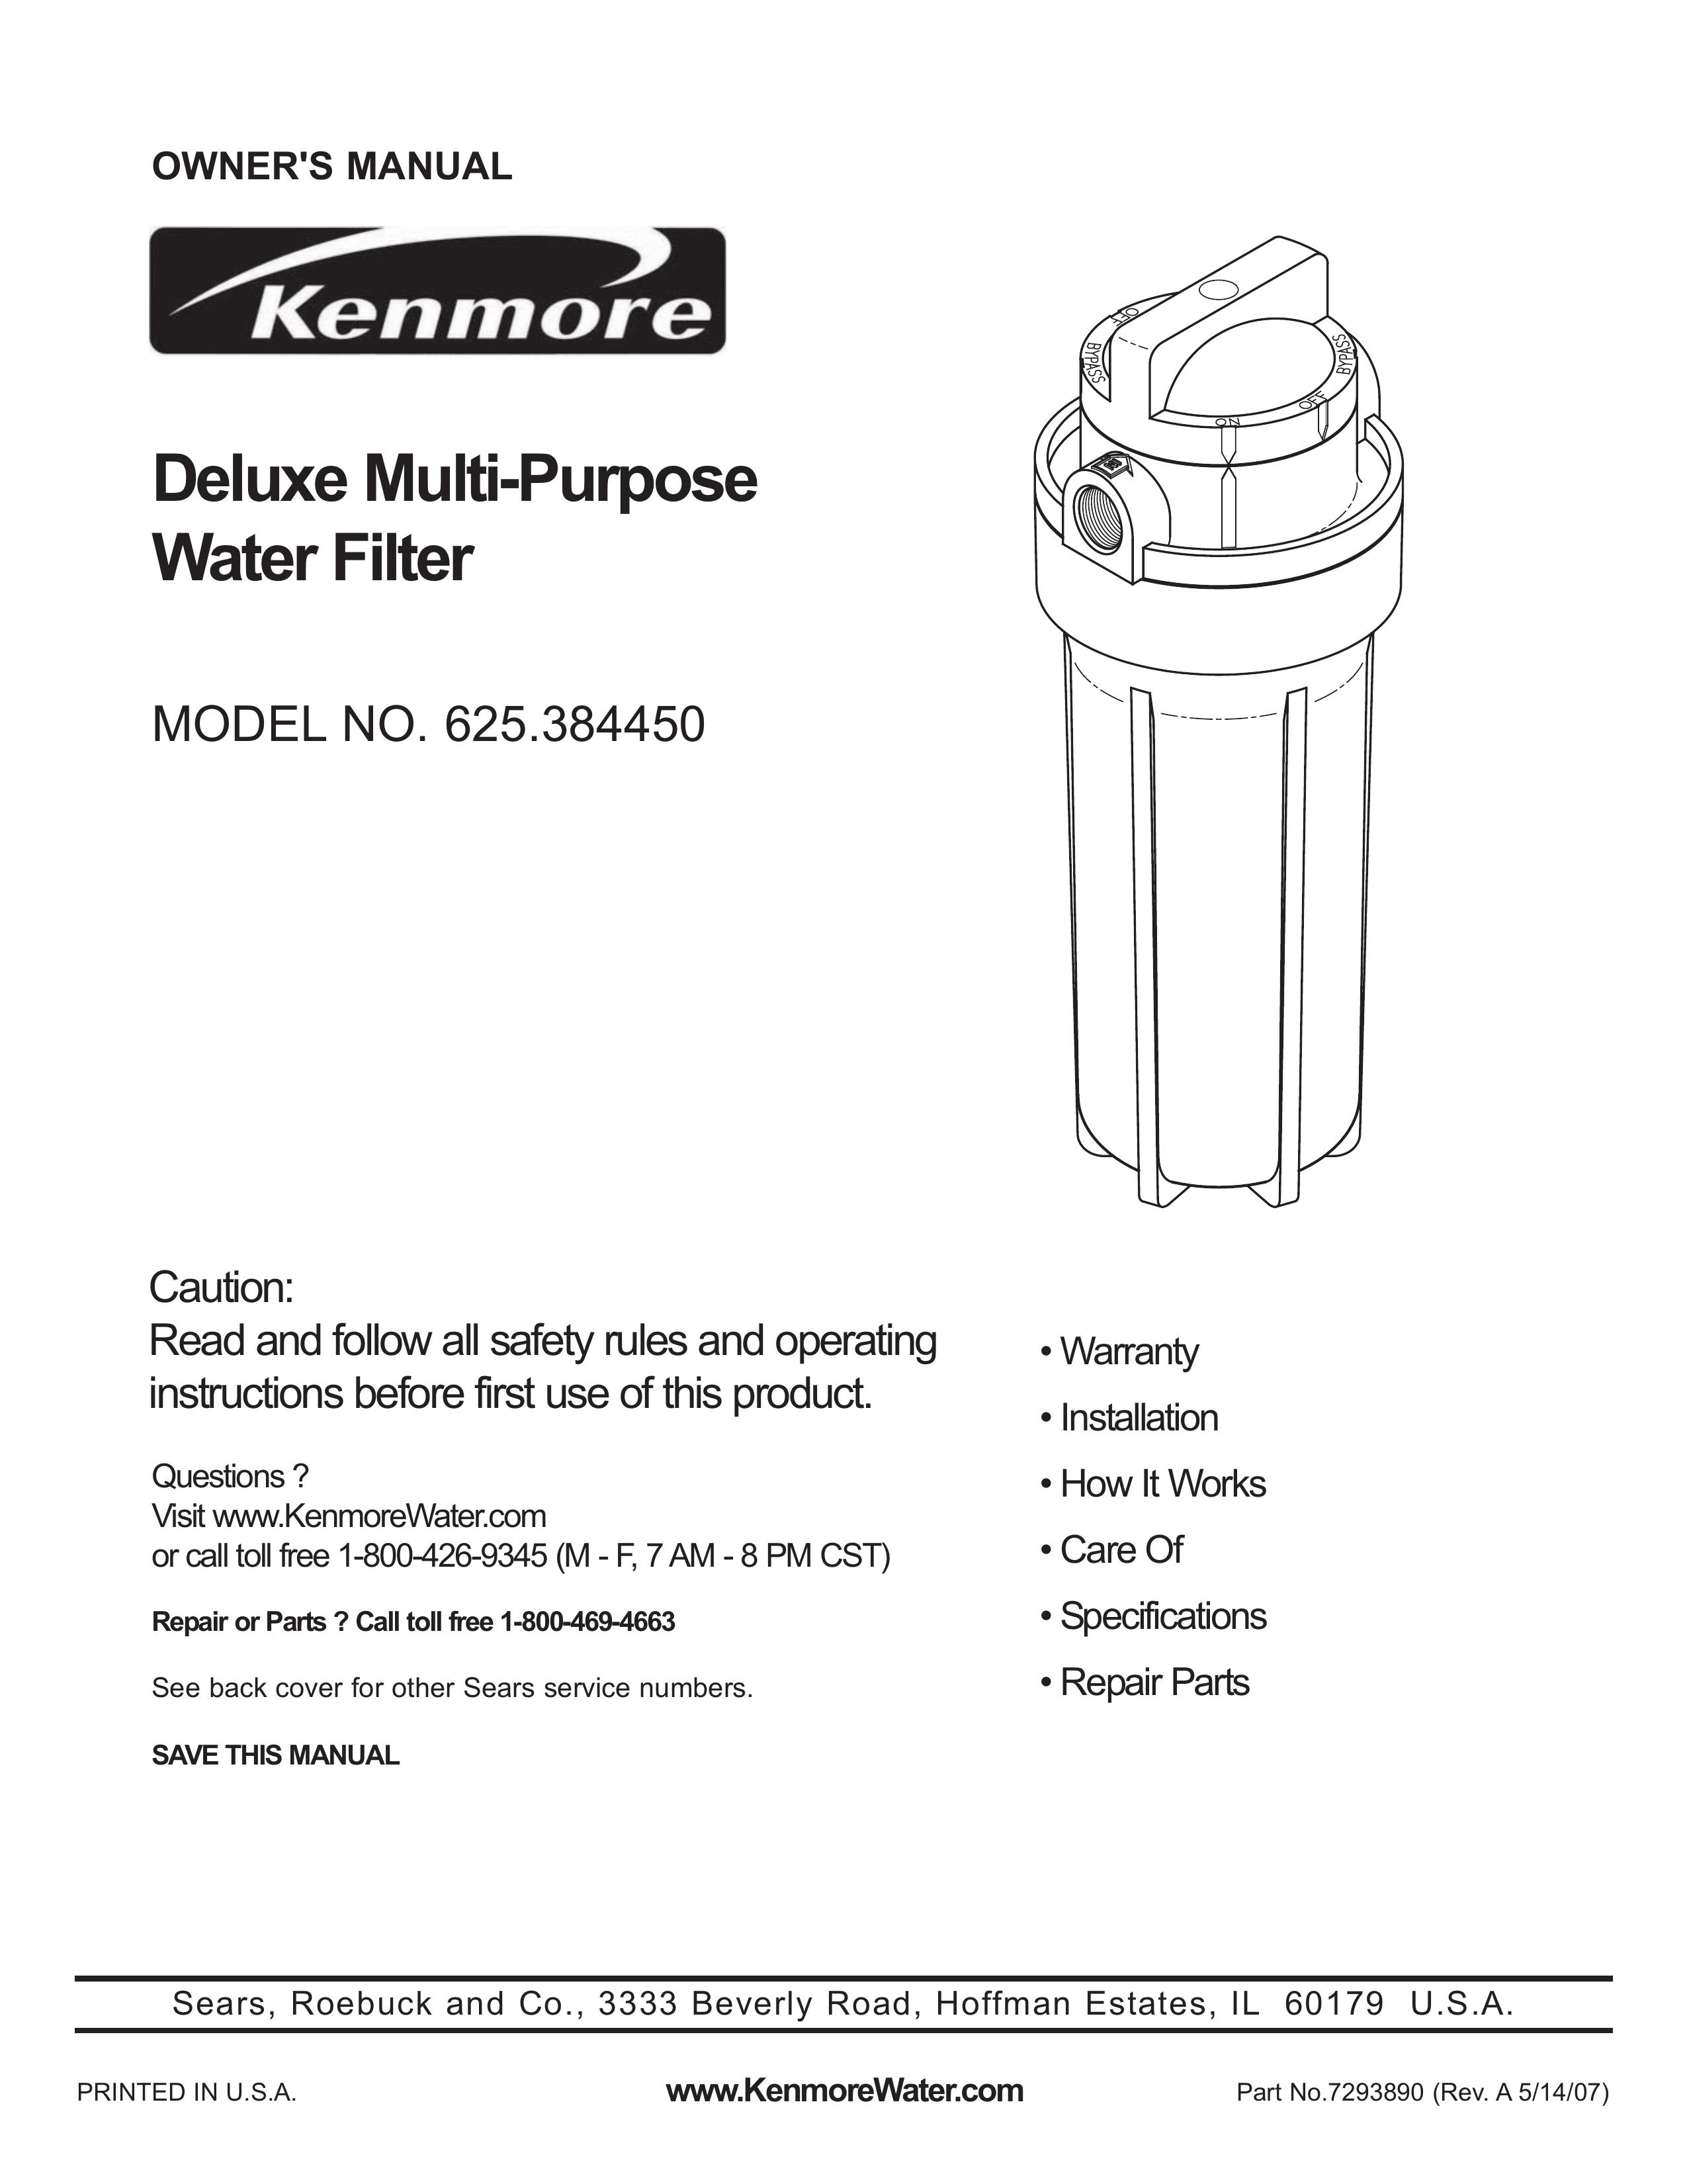 Kenmore 625.38445 Water Dispenser User Manual